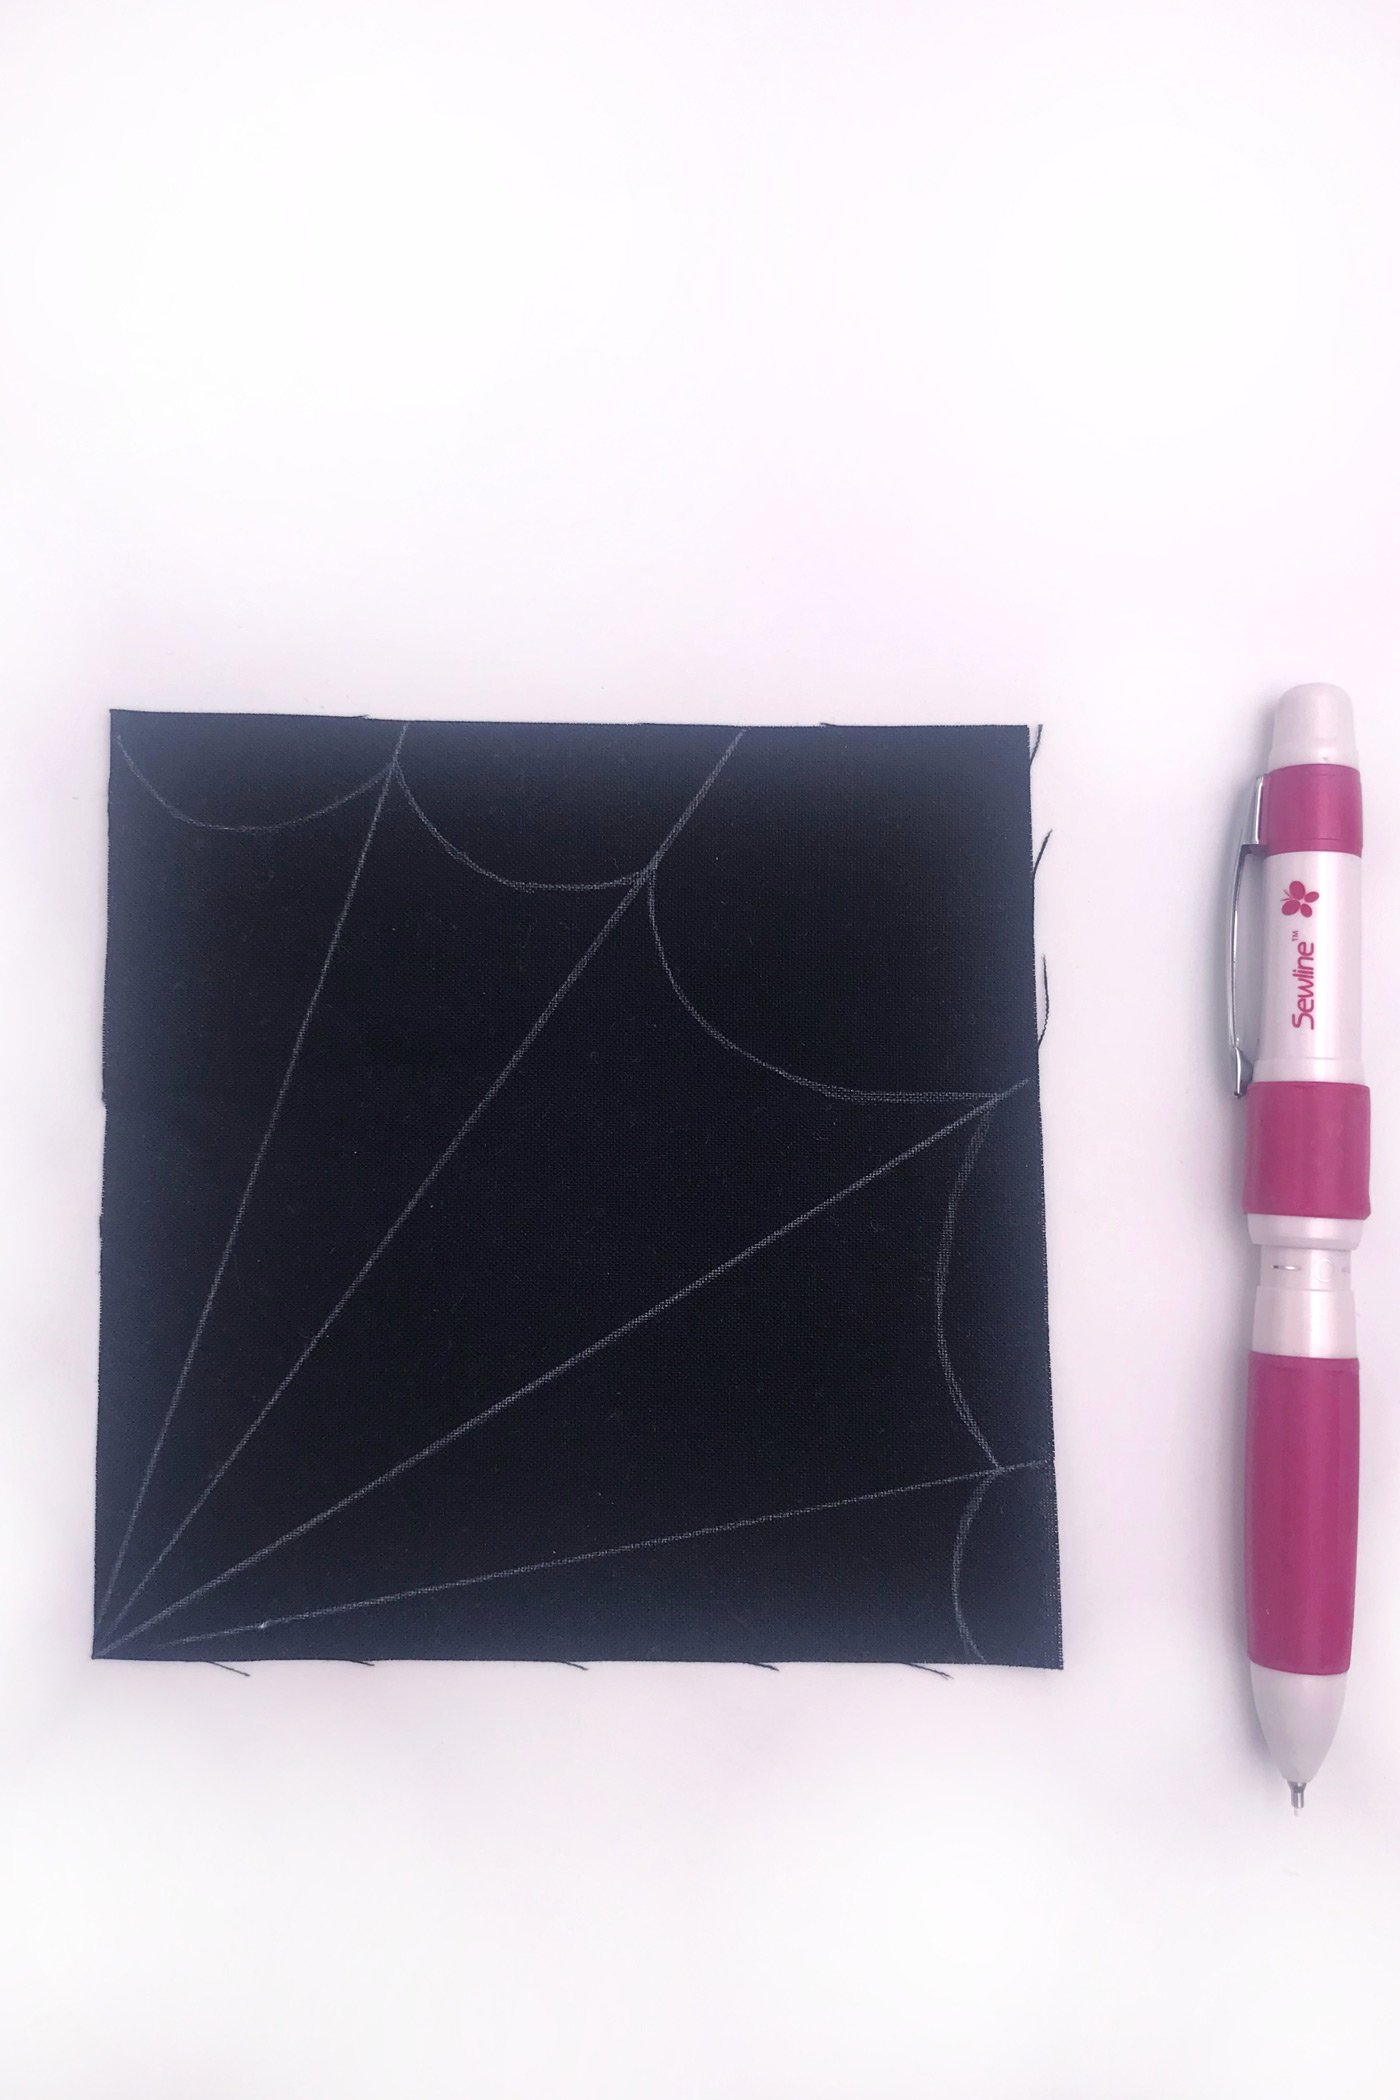 tissu noir avec une toile d'araignée blanche dessinée dessus